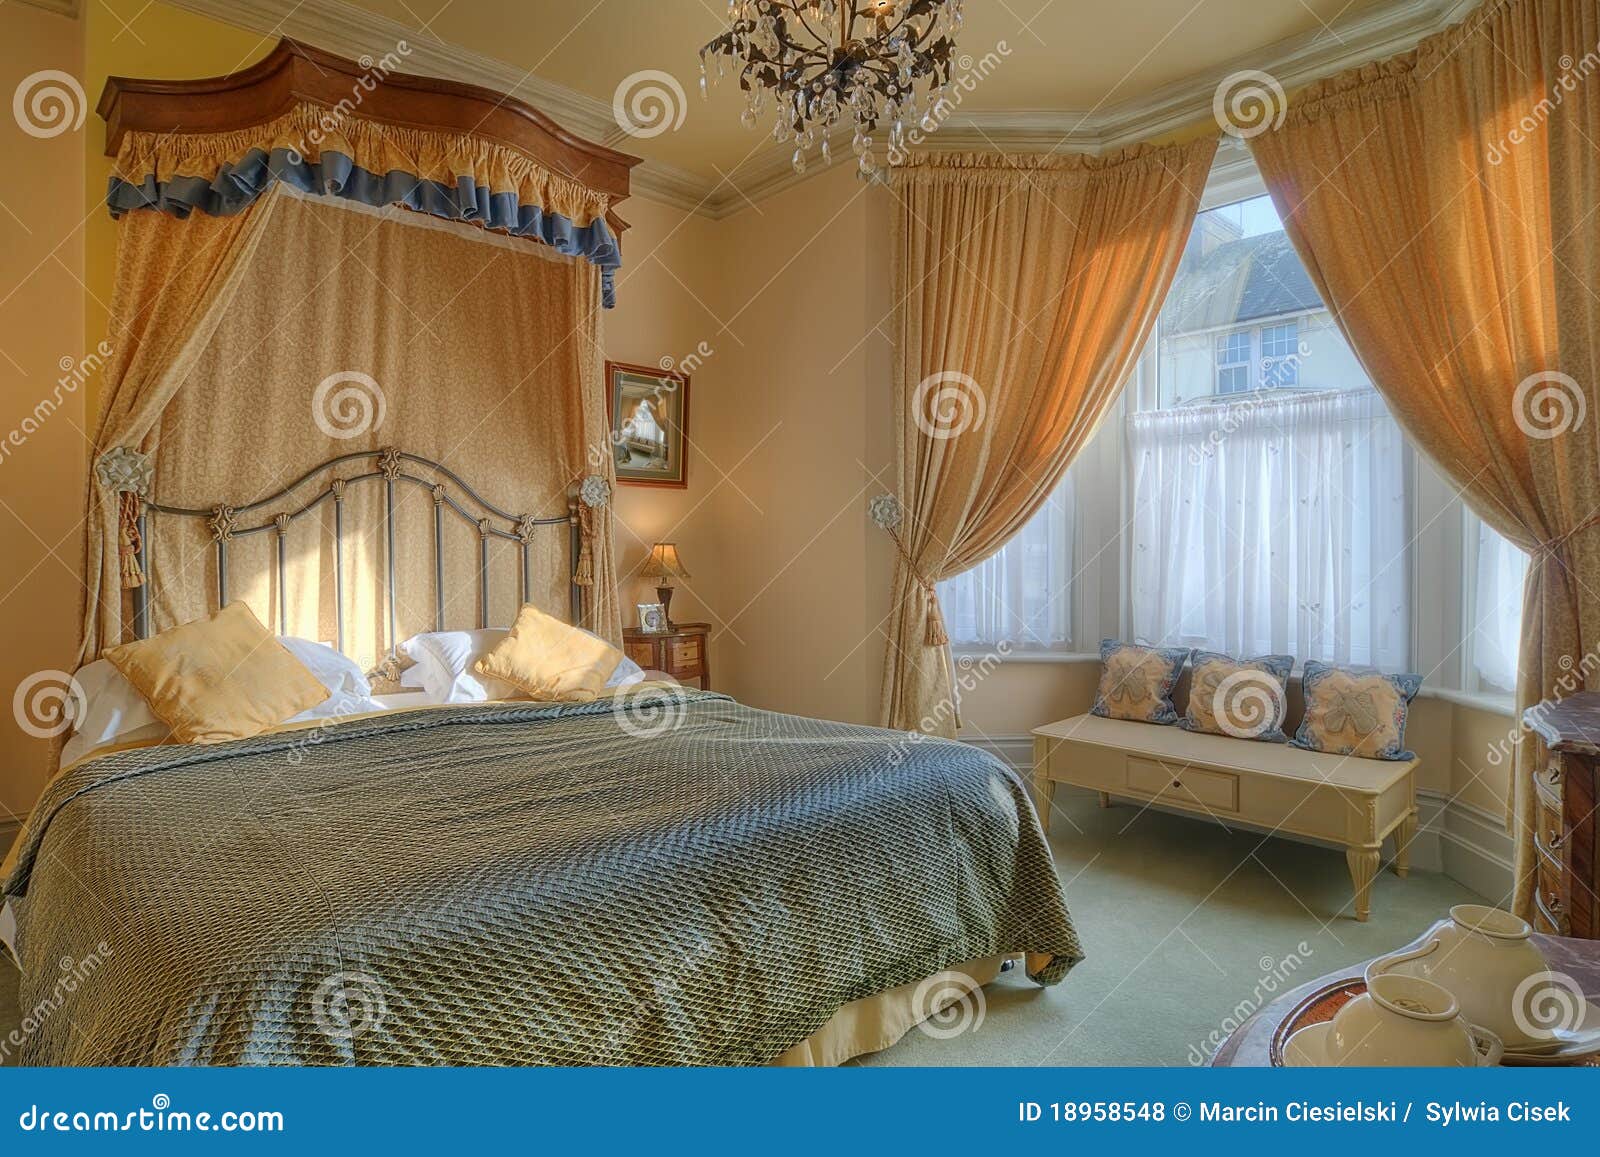 beautiful bedroom